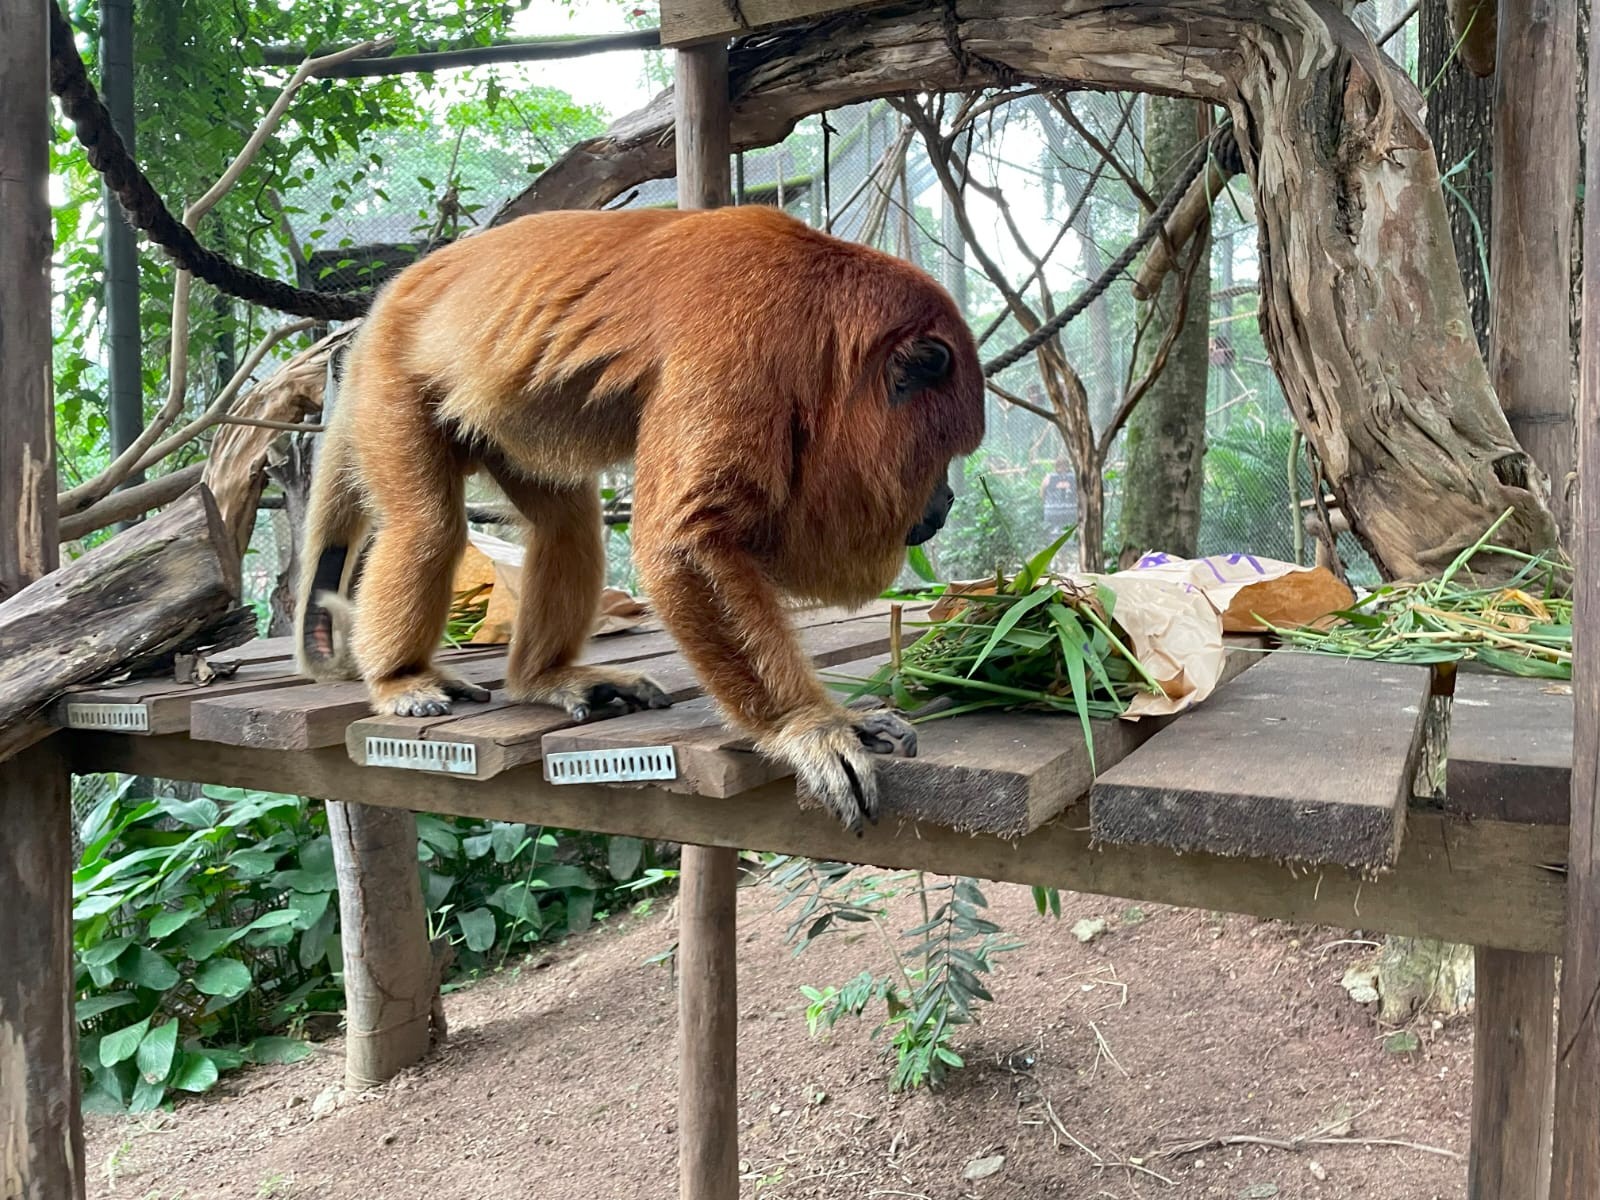 Primata observa os alimentos — Foto: Divulgação